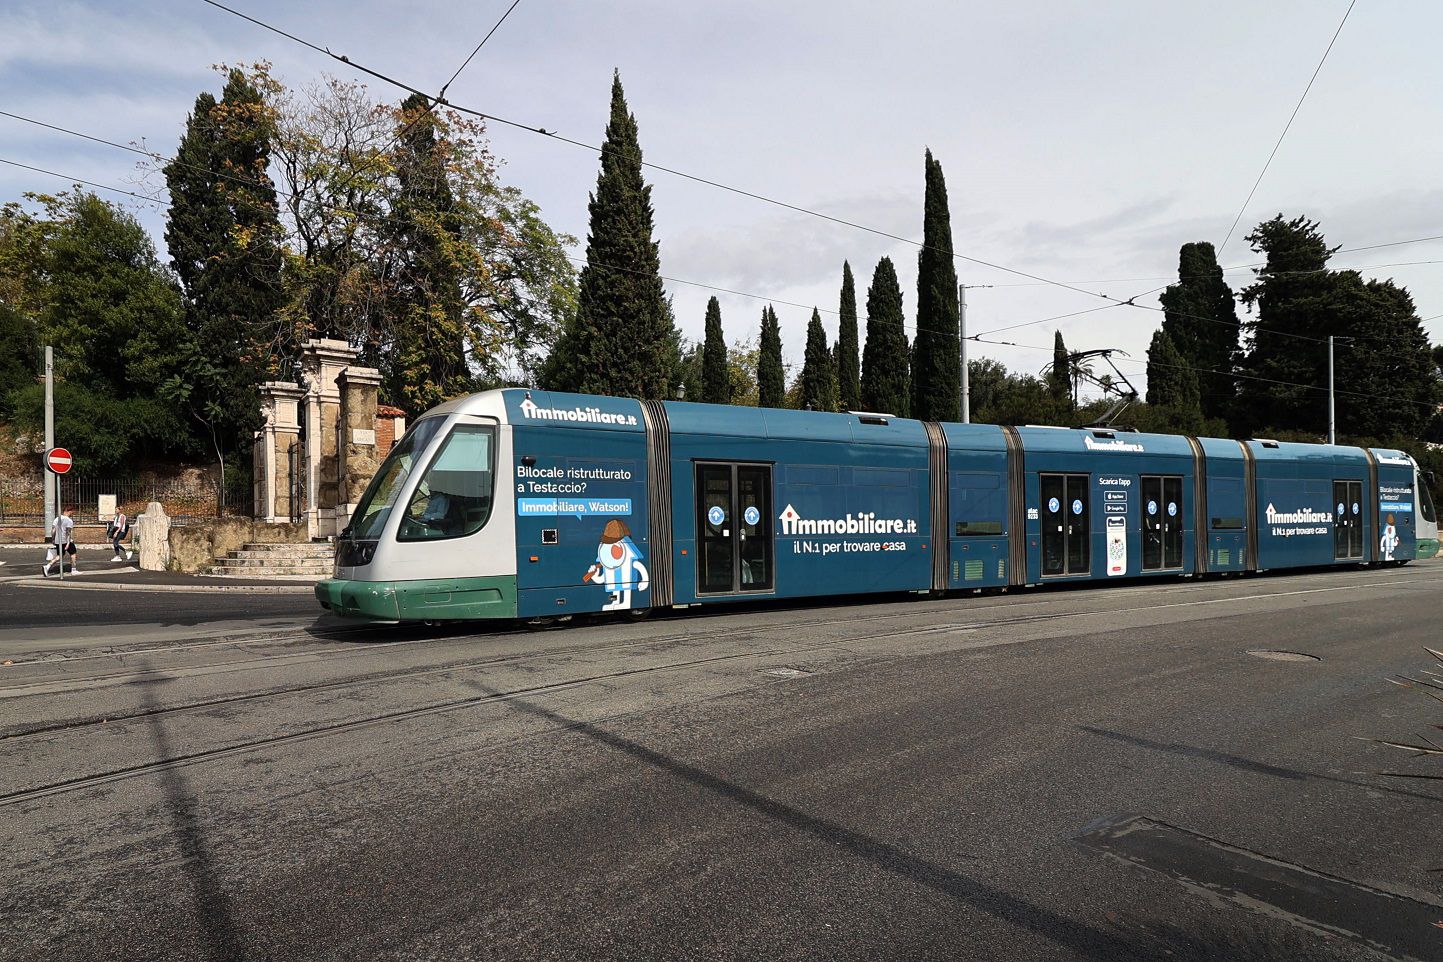 Immobiliare.it torna sui bus e i tram di 23 città italiane con IGPDecaux